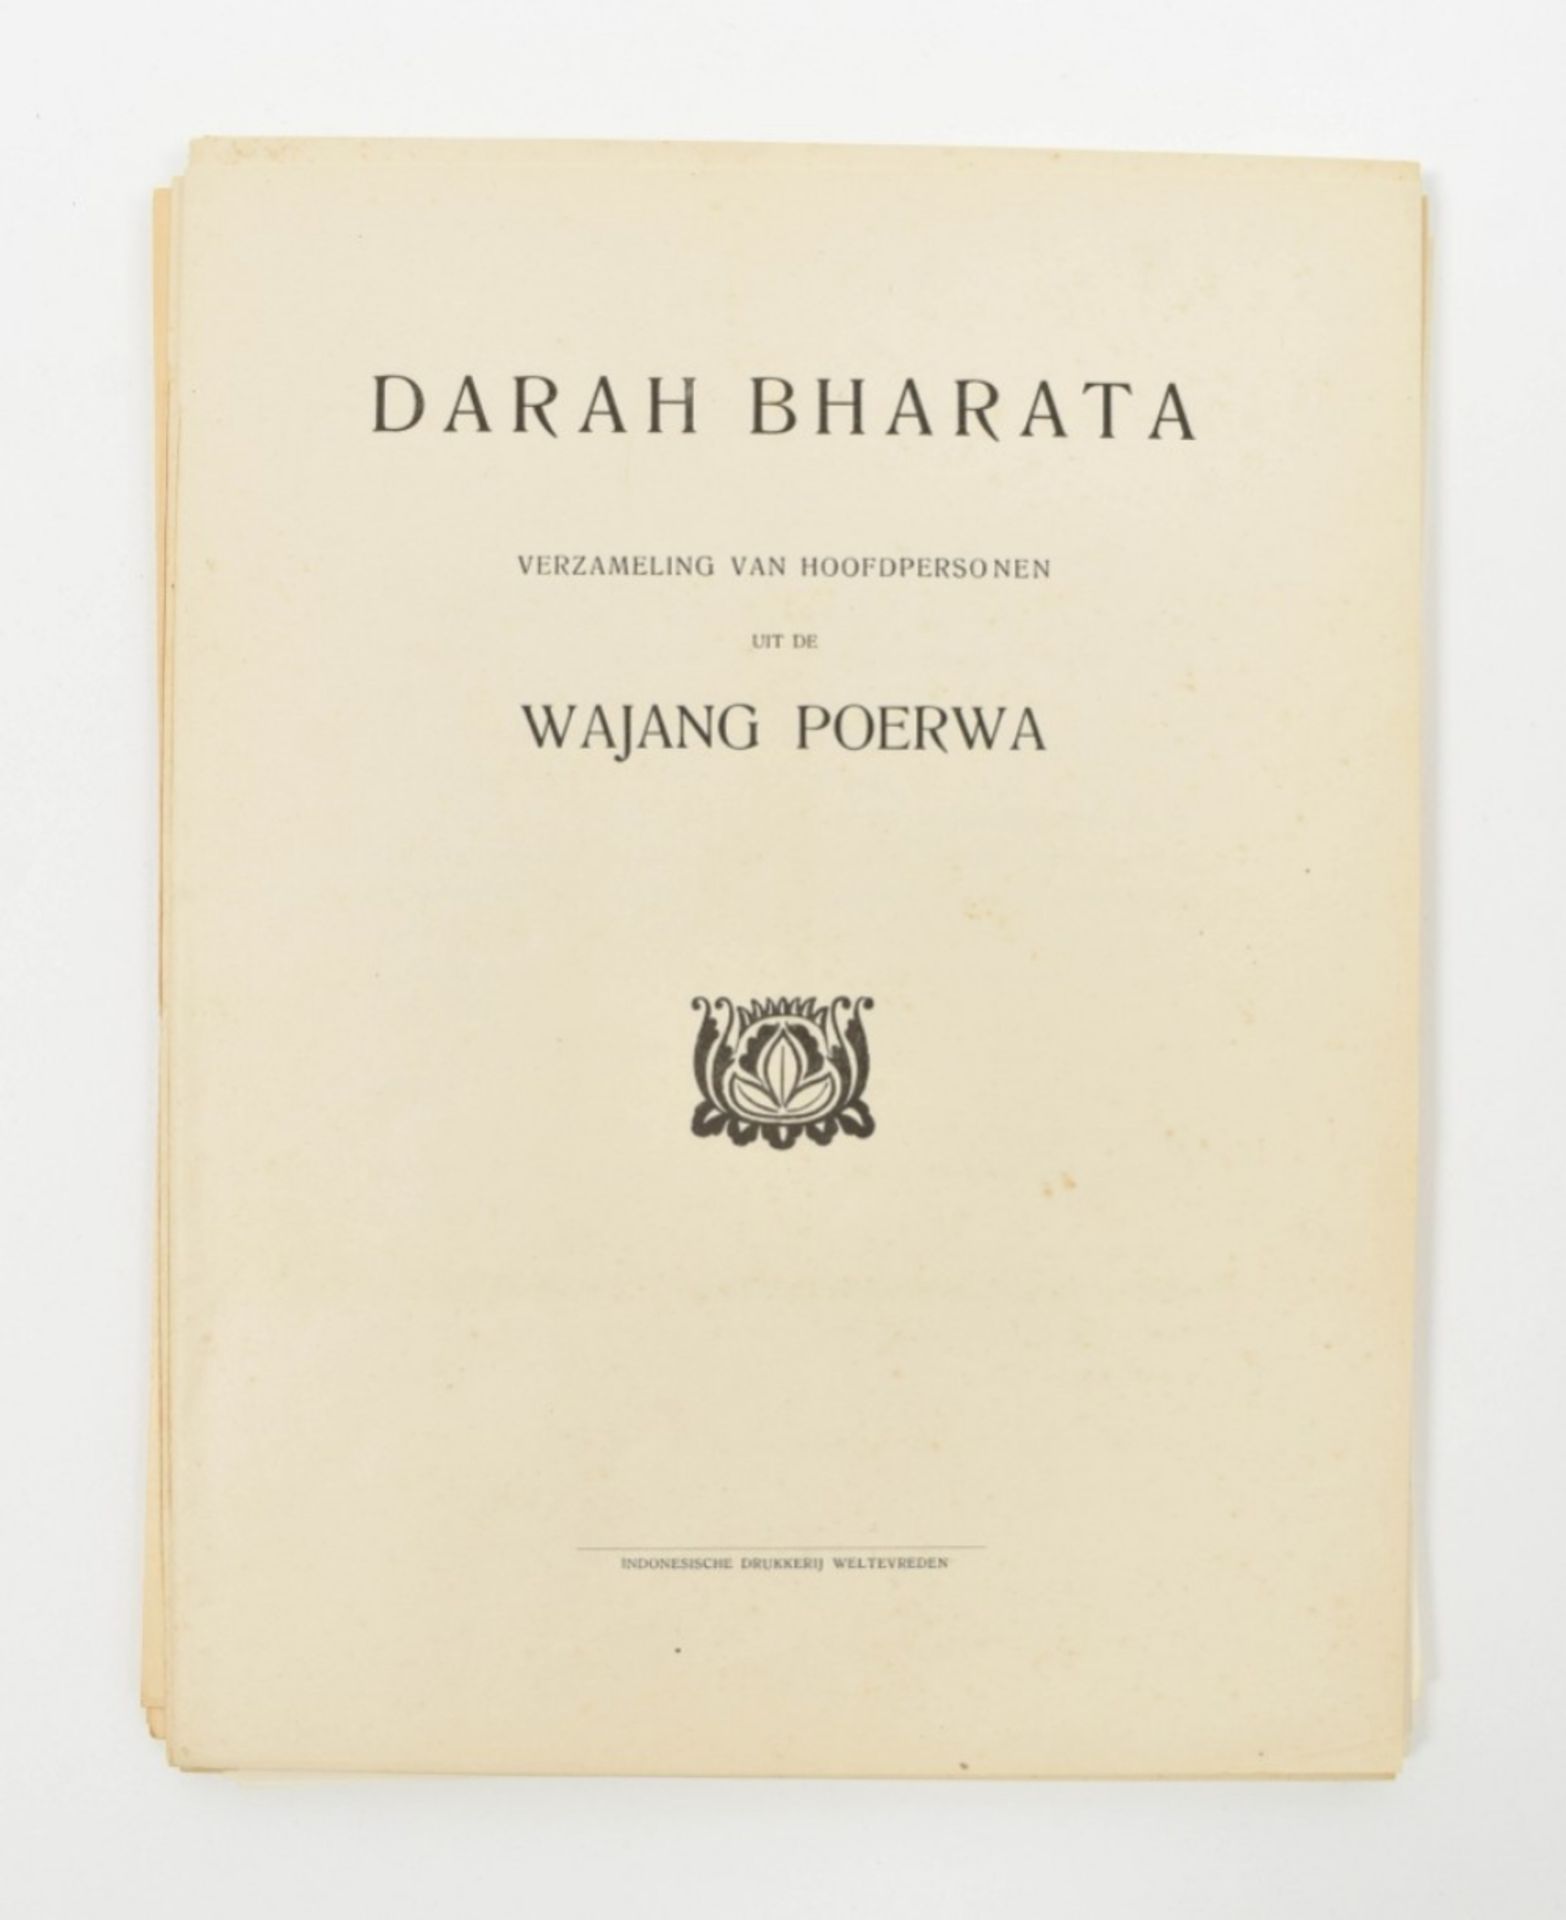 Darah Bharata. Verzameling van hoofdpersonen uit de Wajang Poerwa - Image 10 of 10